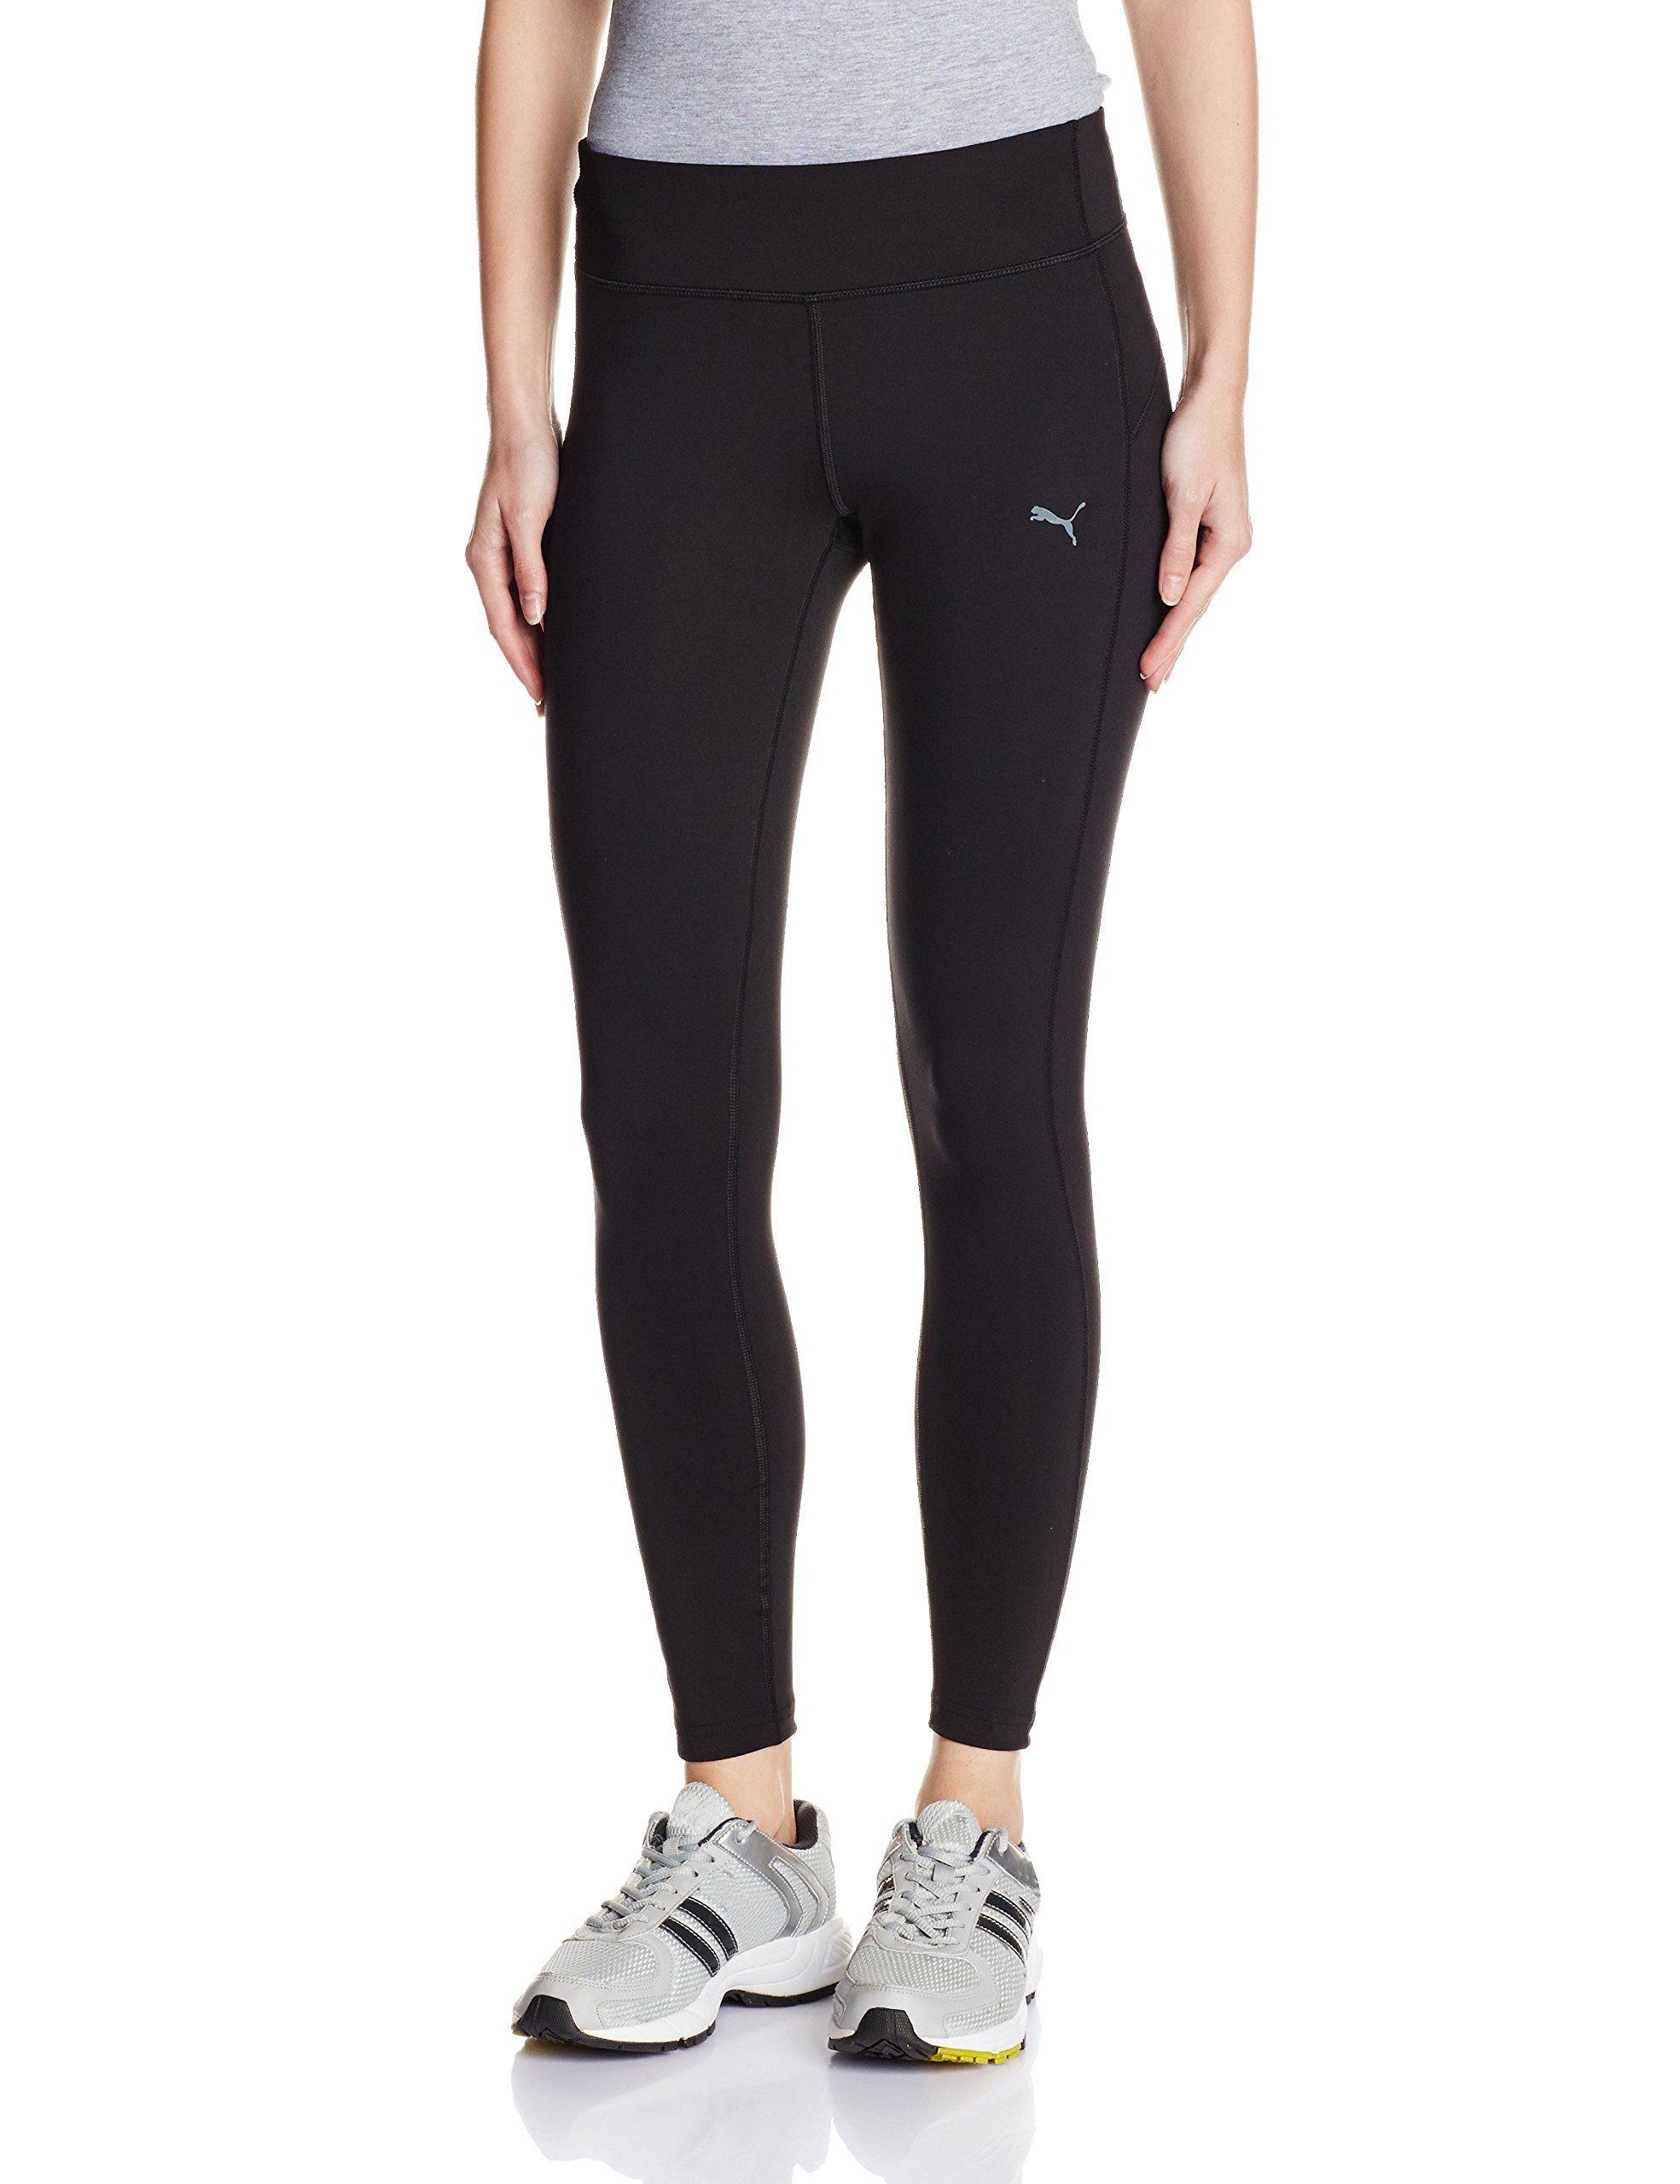 Black and White Athletic Clothing Logo - Women's Running Clothing: Amazon.co.uk